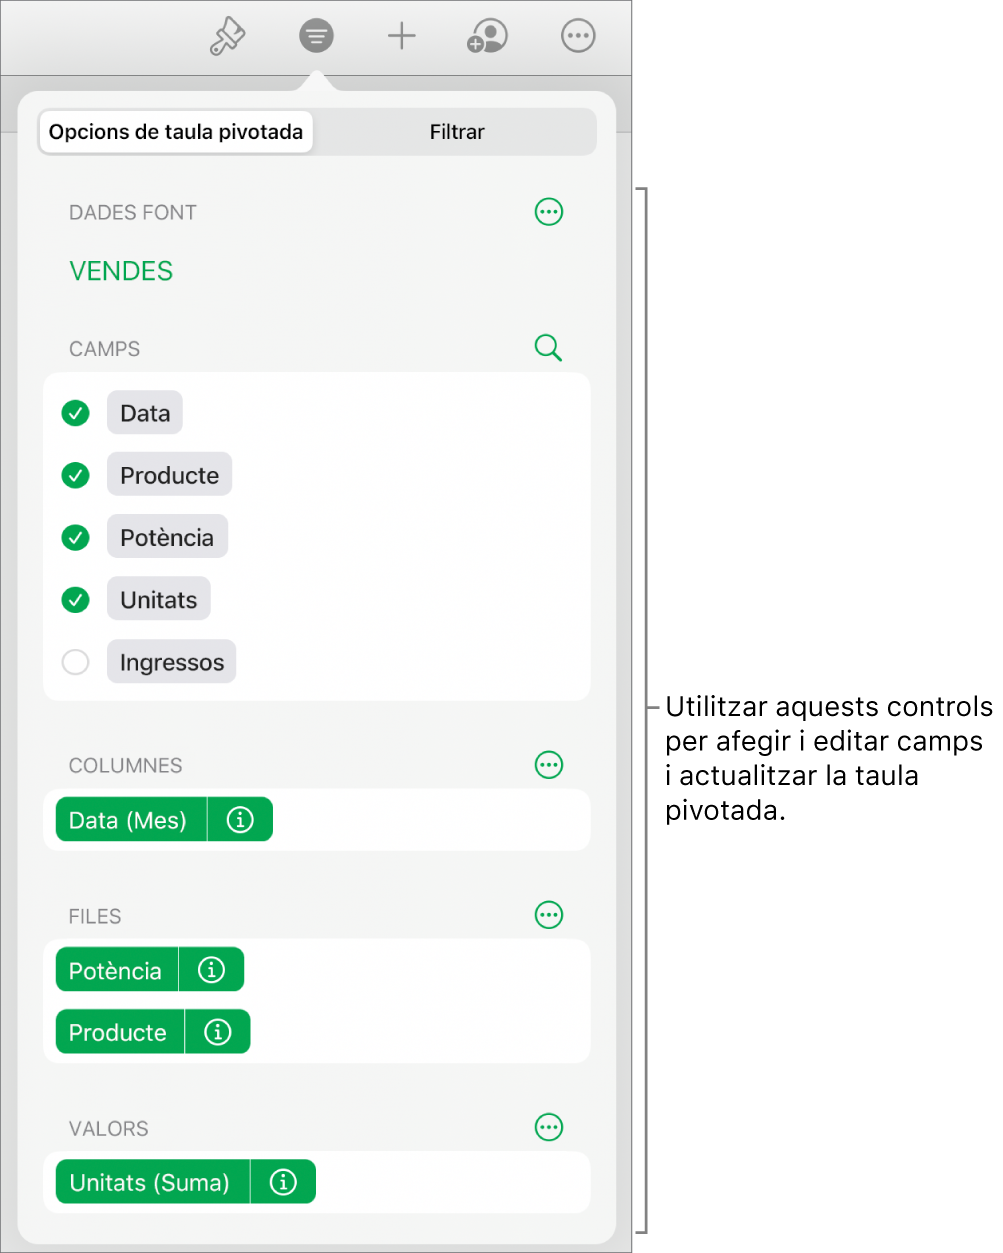 El menú “Opcions de taula dinàmica” que mostra els camps a les seccions Columnes, Files i Valors, a més dels controls per editar els camps.